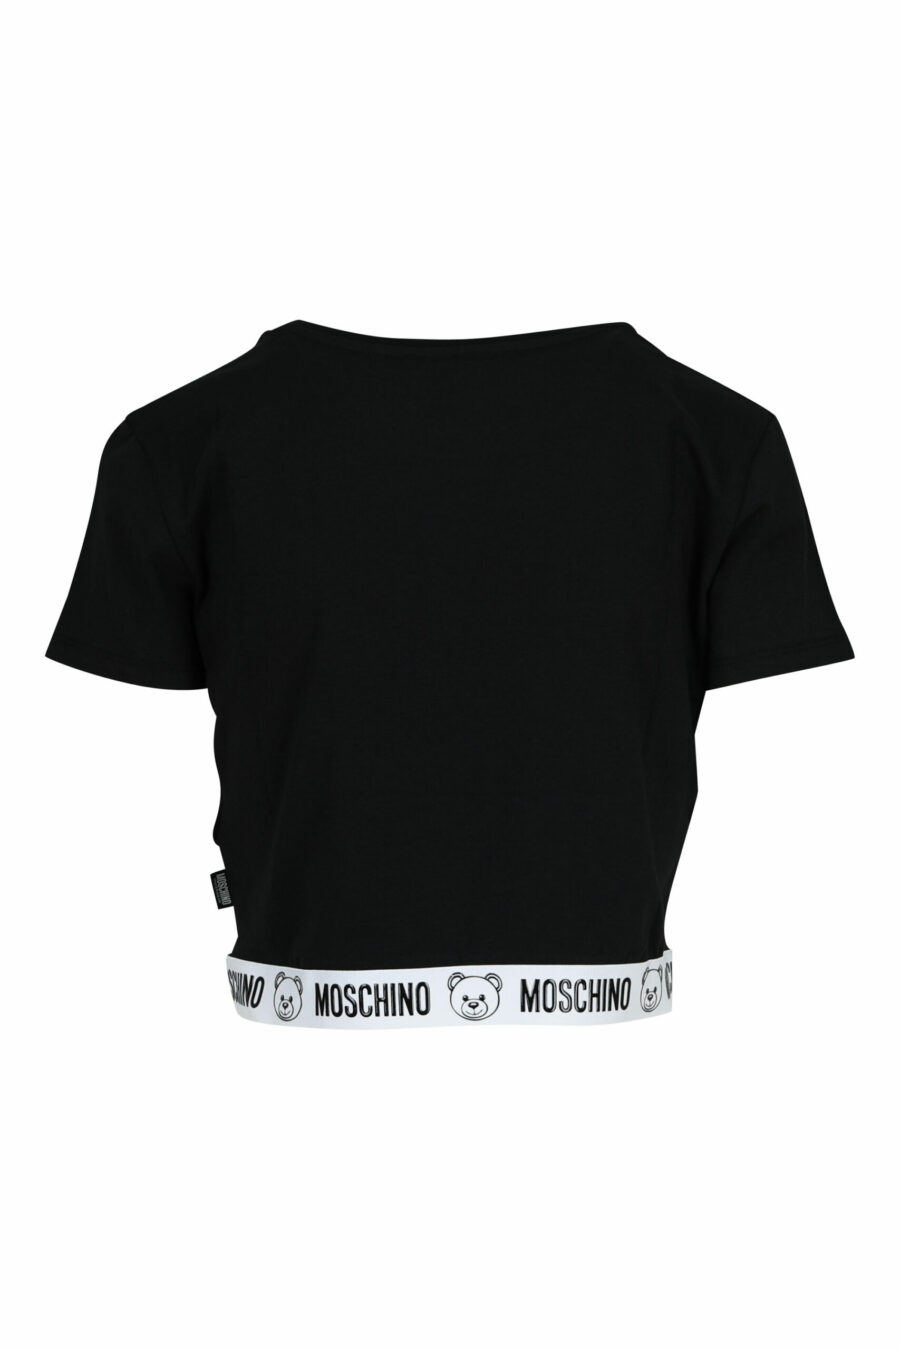 Kurzes schwarzes T-Shirt mit Bärenlogo auf weißem Band - 667113355283 1 skaliert